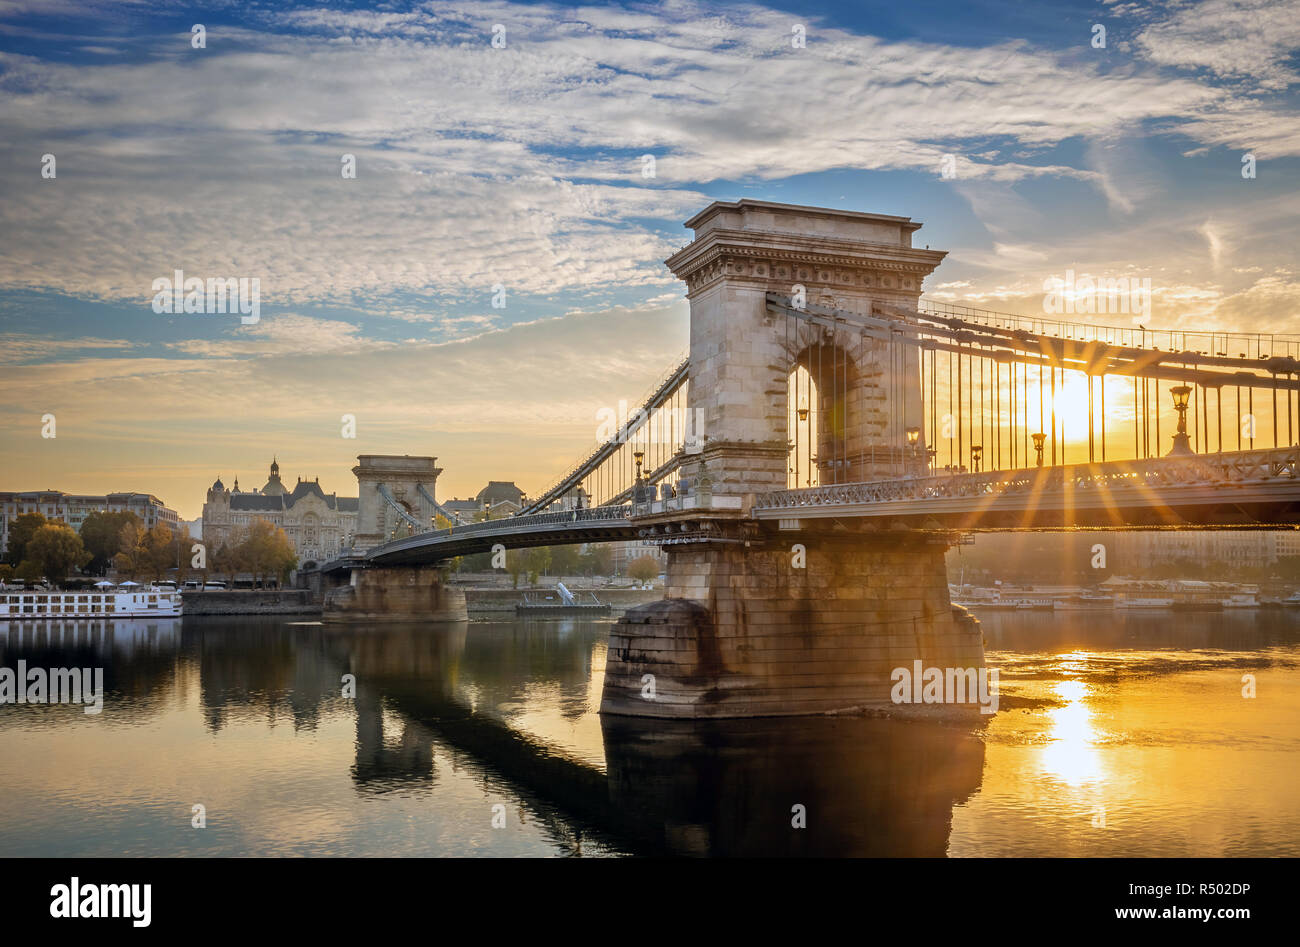 Budapest, Hungary - Beautiful sunrise at Szechenyi Chain Bridge Stock Photo